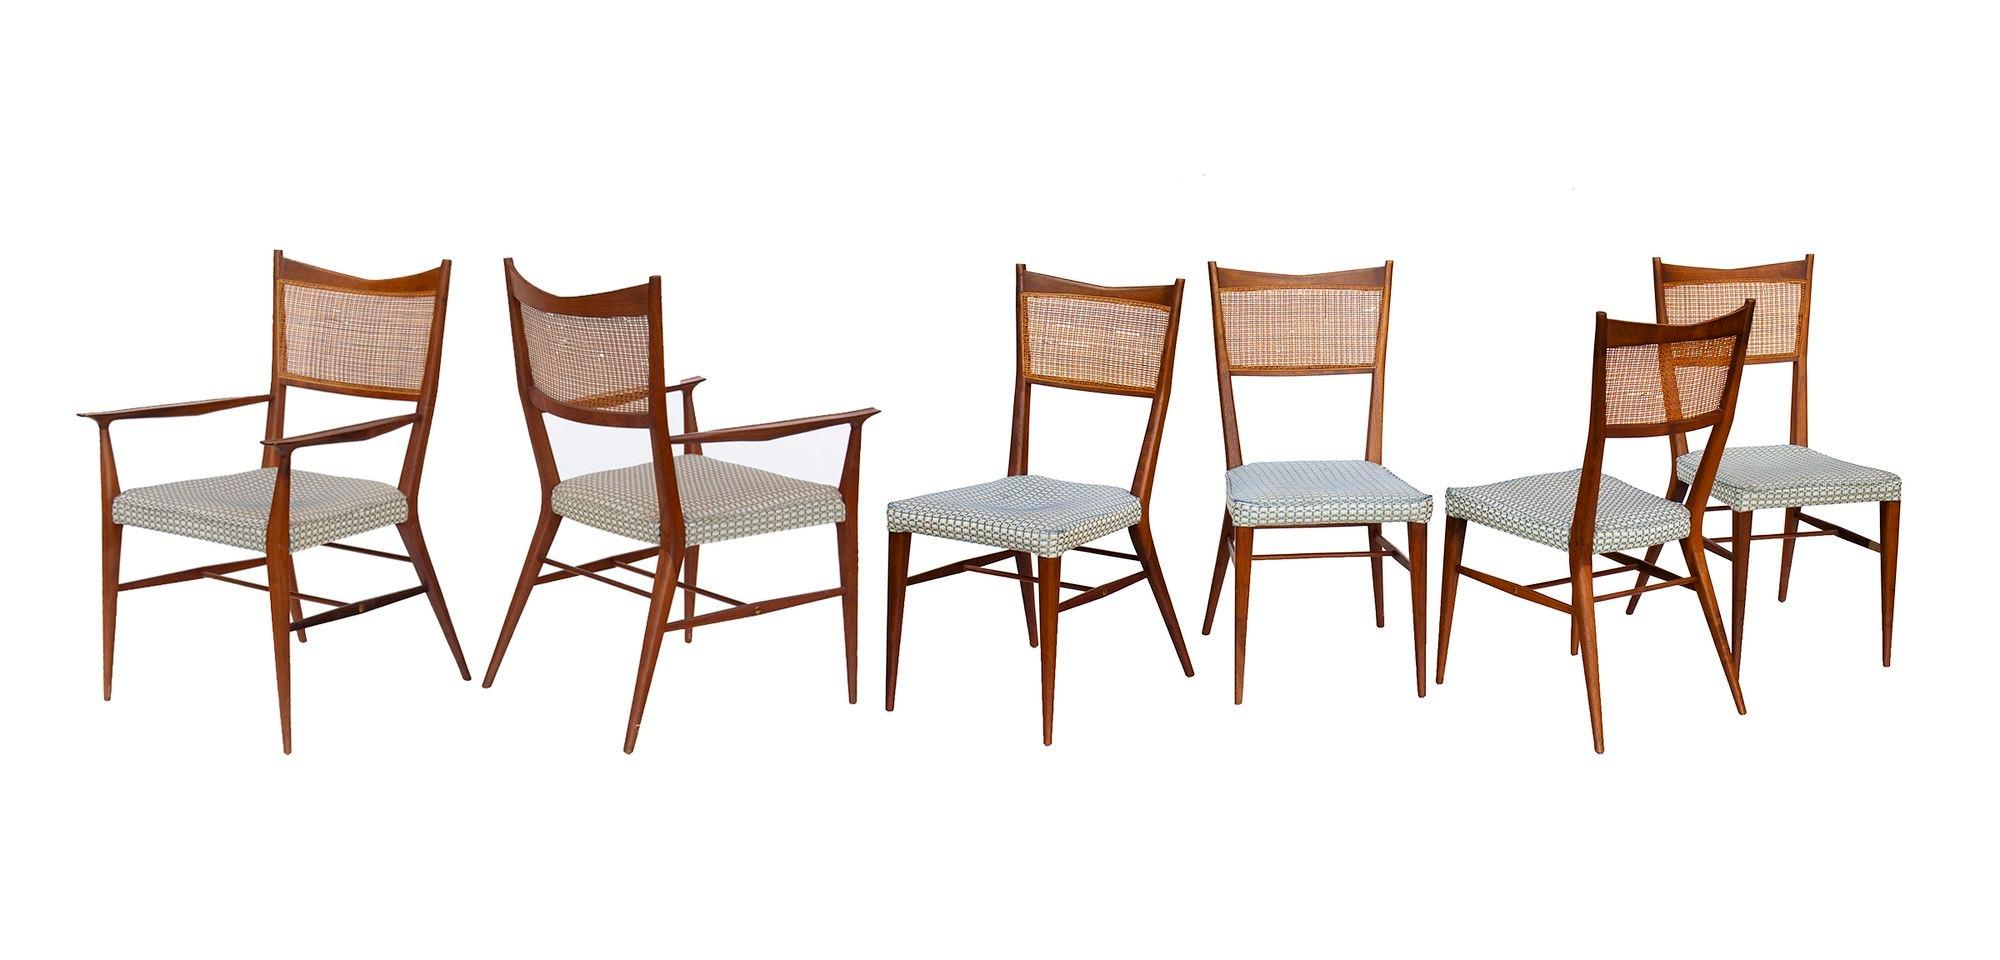 USA, 1950er Jahre
Satz Paul McCobb für Calvin Esszimmerstühle aus Nussbaumholz mit Rückenlehnen aus Caned. Das Set besteht aus zwei Sesseln und vier Beistellstühlen, alle mit ihren originalen Stoffsitzen aus blauem Tweed. Elegante, luftige,